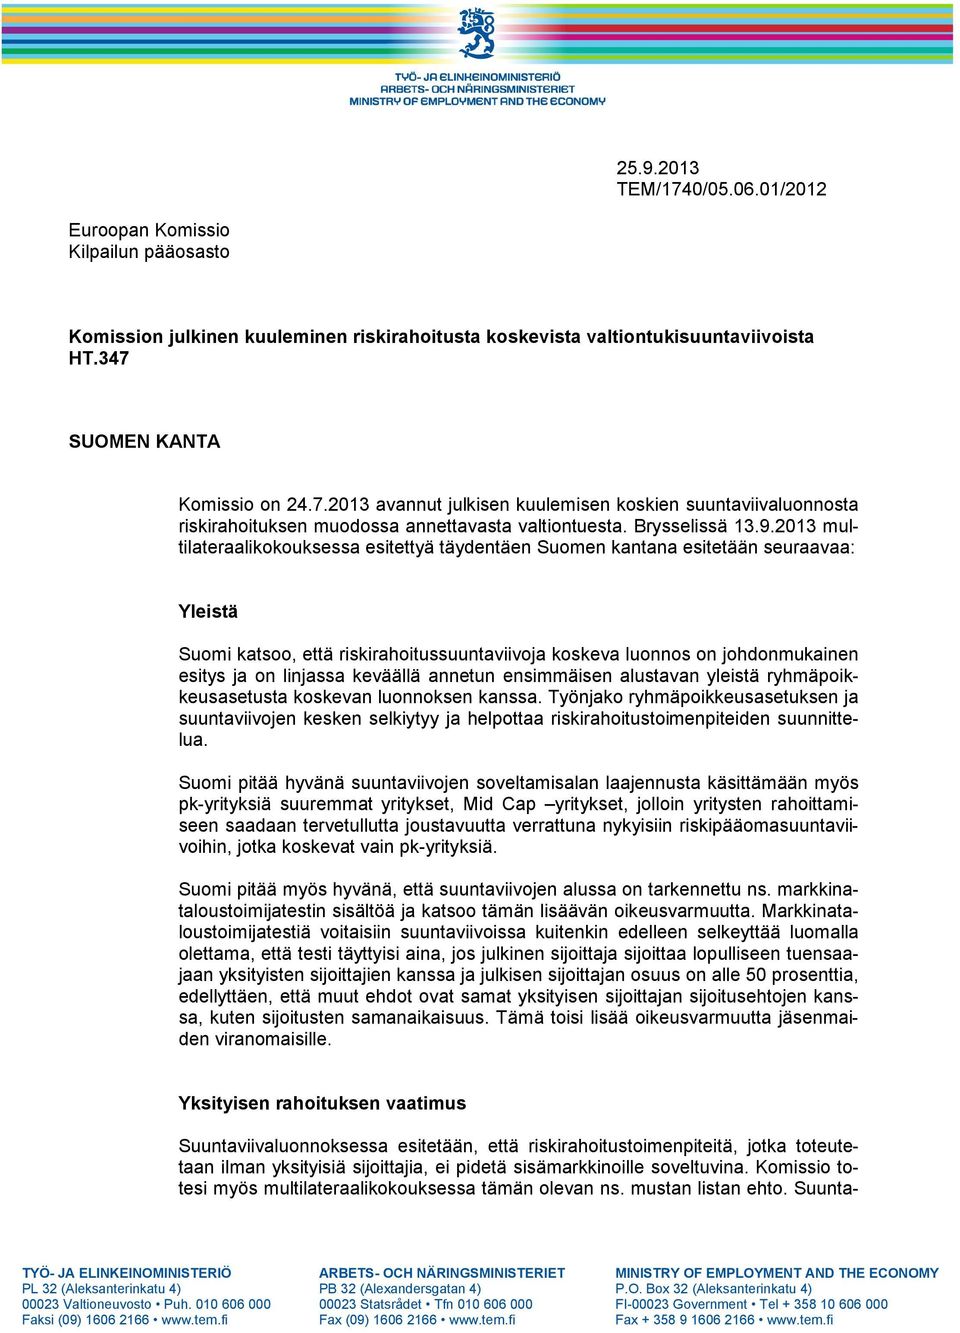 2013 multilateraalikokouksessa esitettyä täydentäen Suomen kantana esitetään seuraavaa: Yleistä Suomi katsoo, että riskirahoitussuuntaviivoja koskeva luonnos on johdonmukainen esitys ja on linjassa